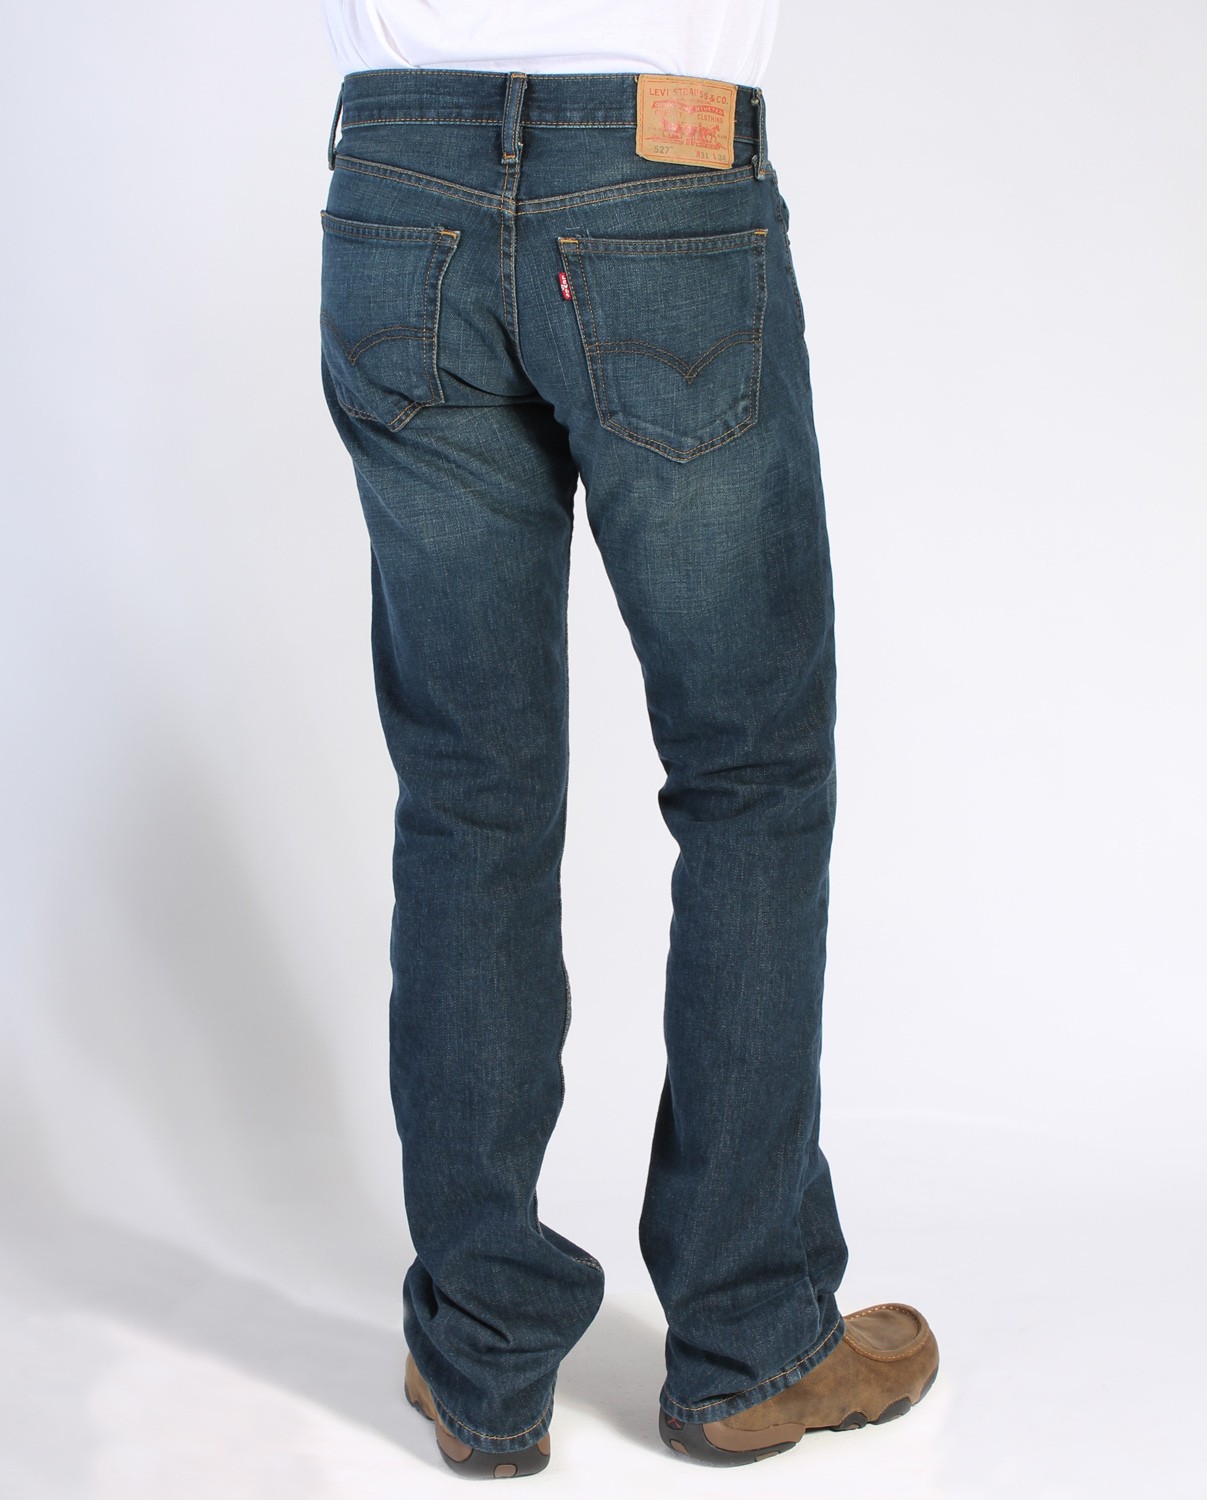 low rise levi's jeans mens